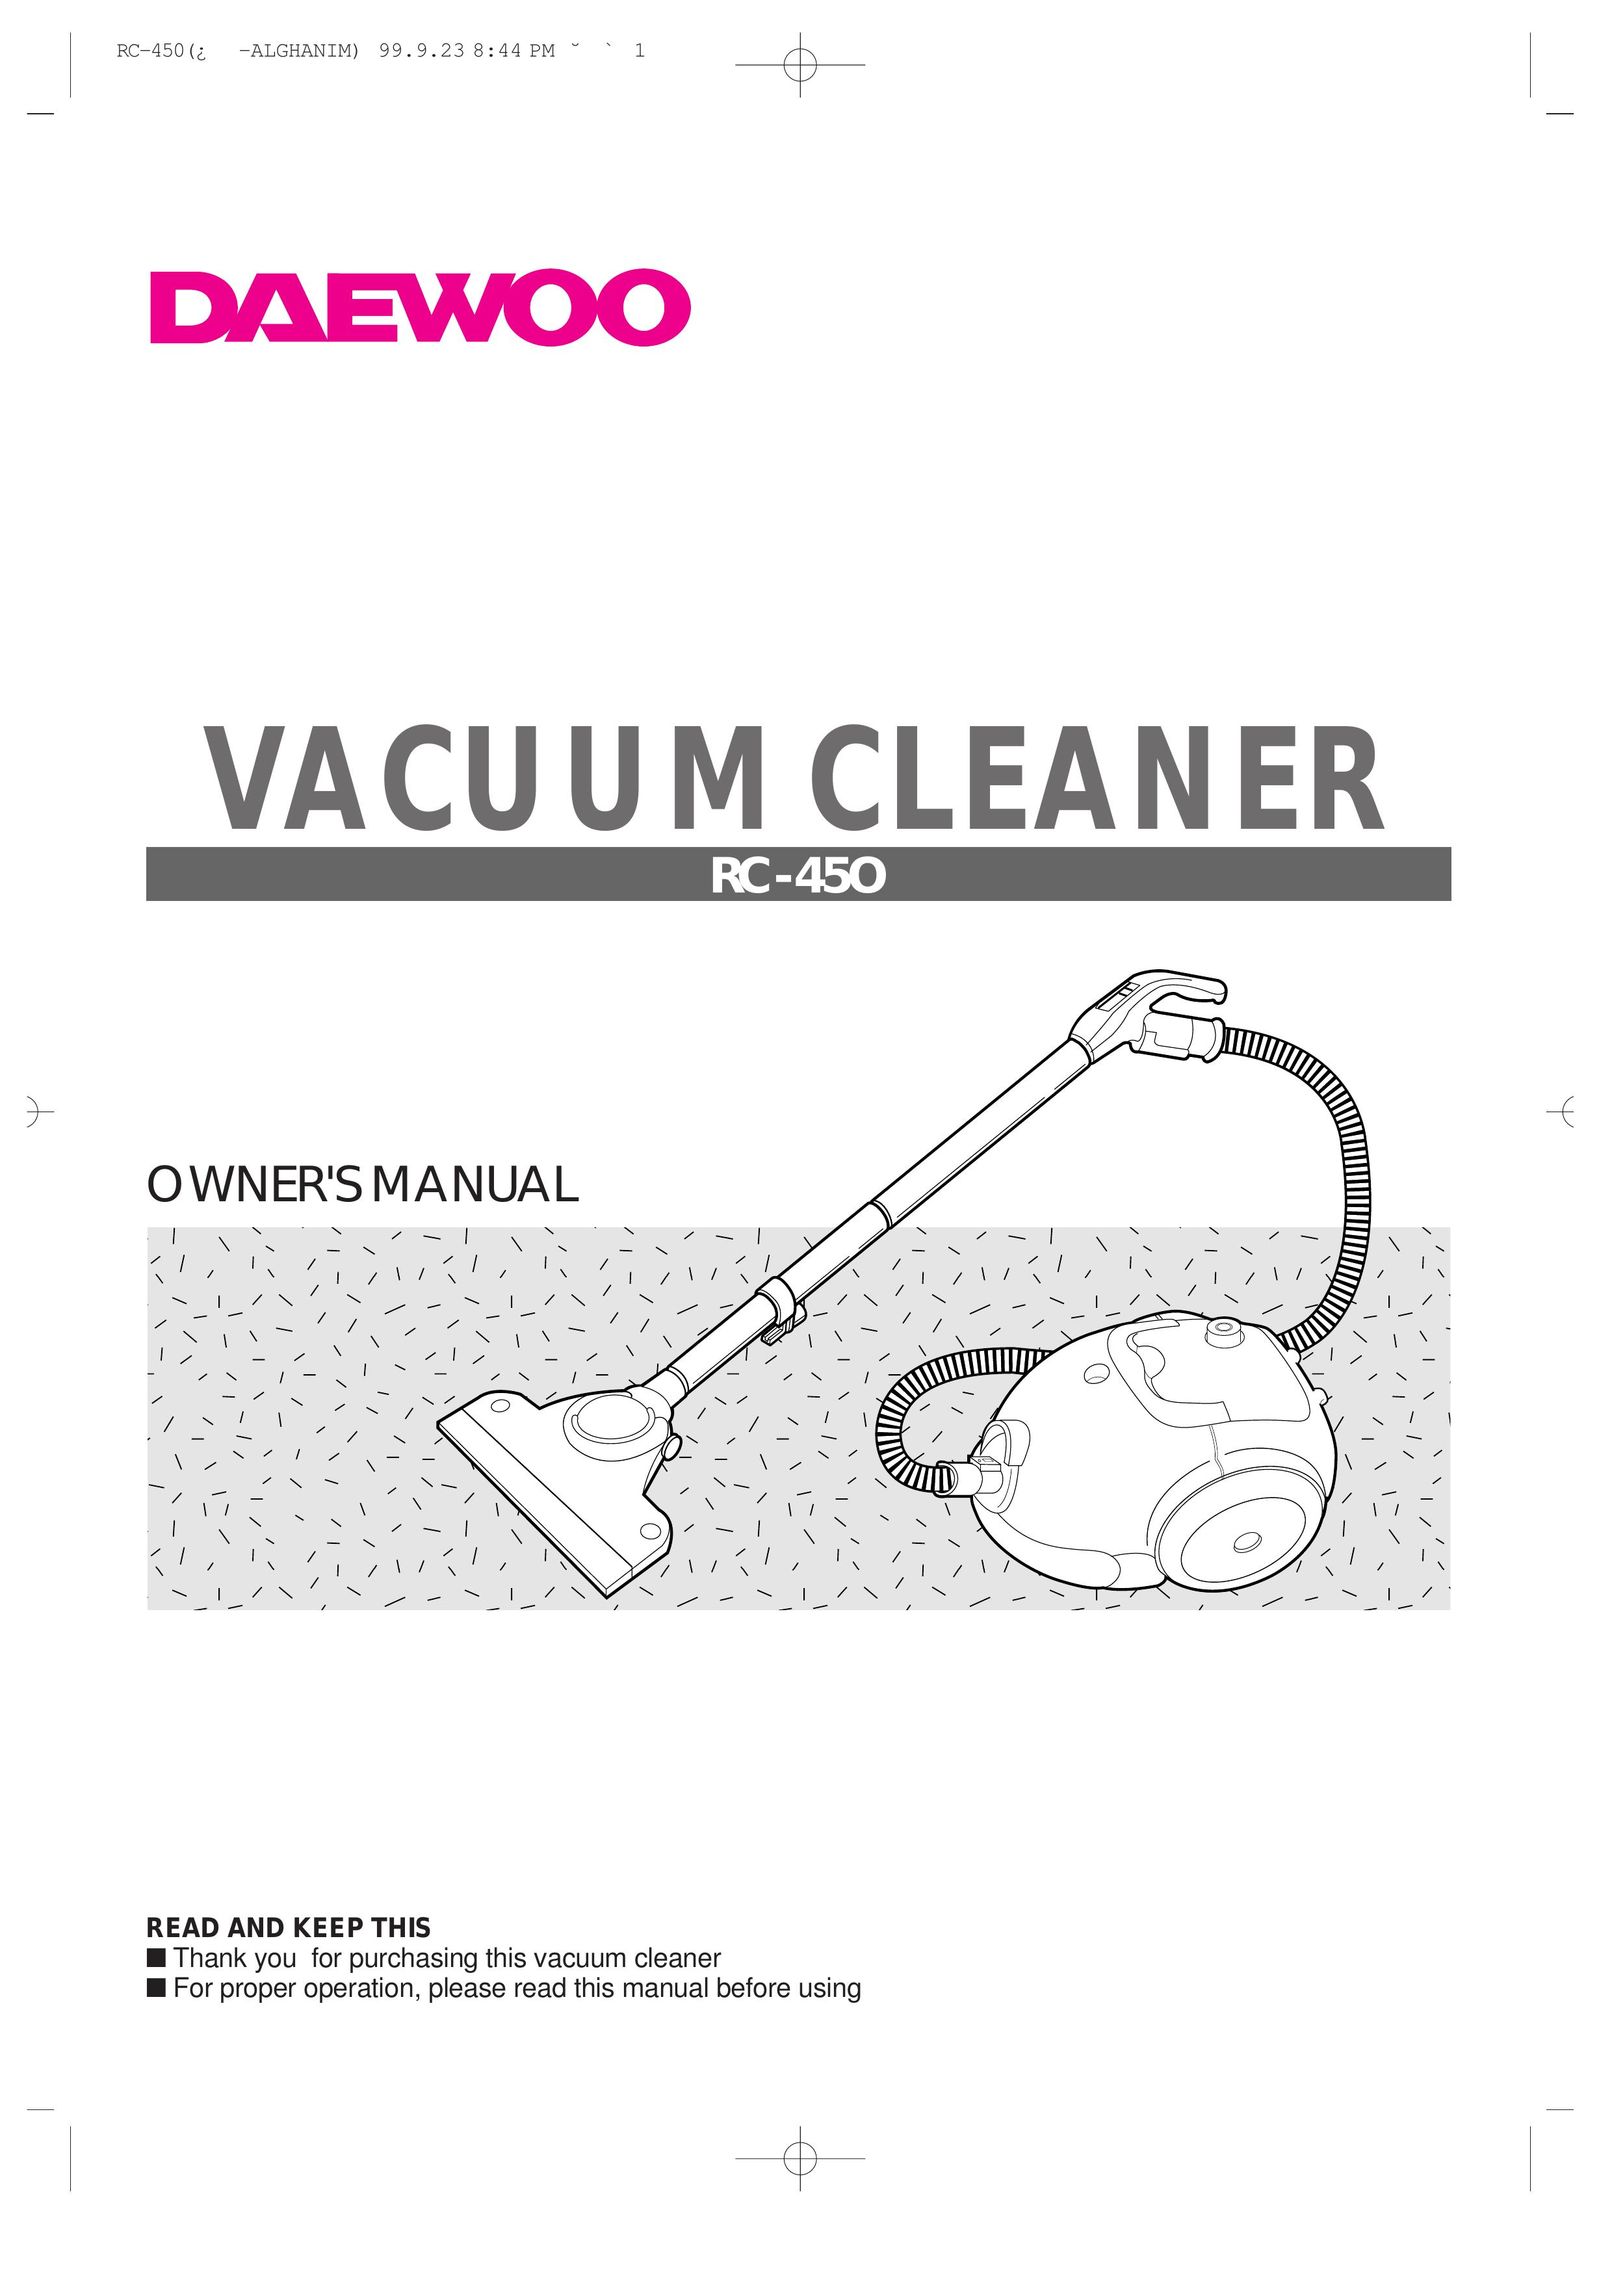 Daewoo RC-450 Vacuum Cleaner User Manual